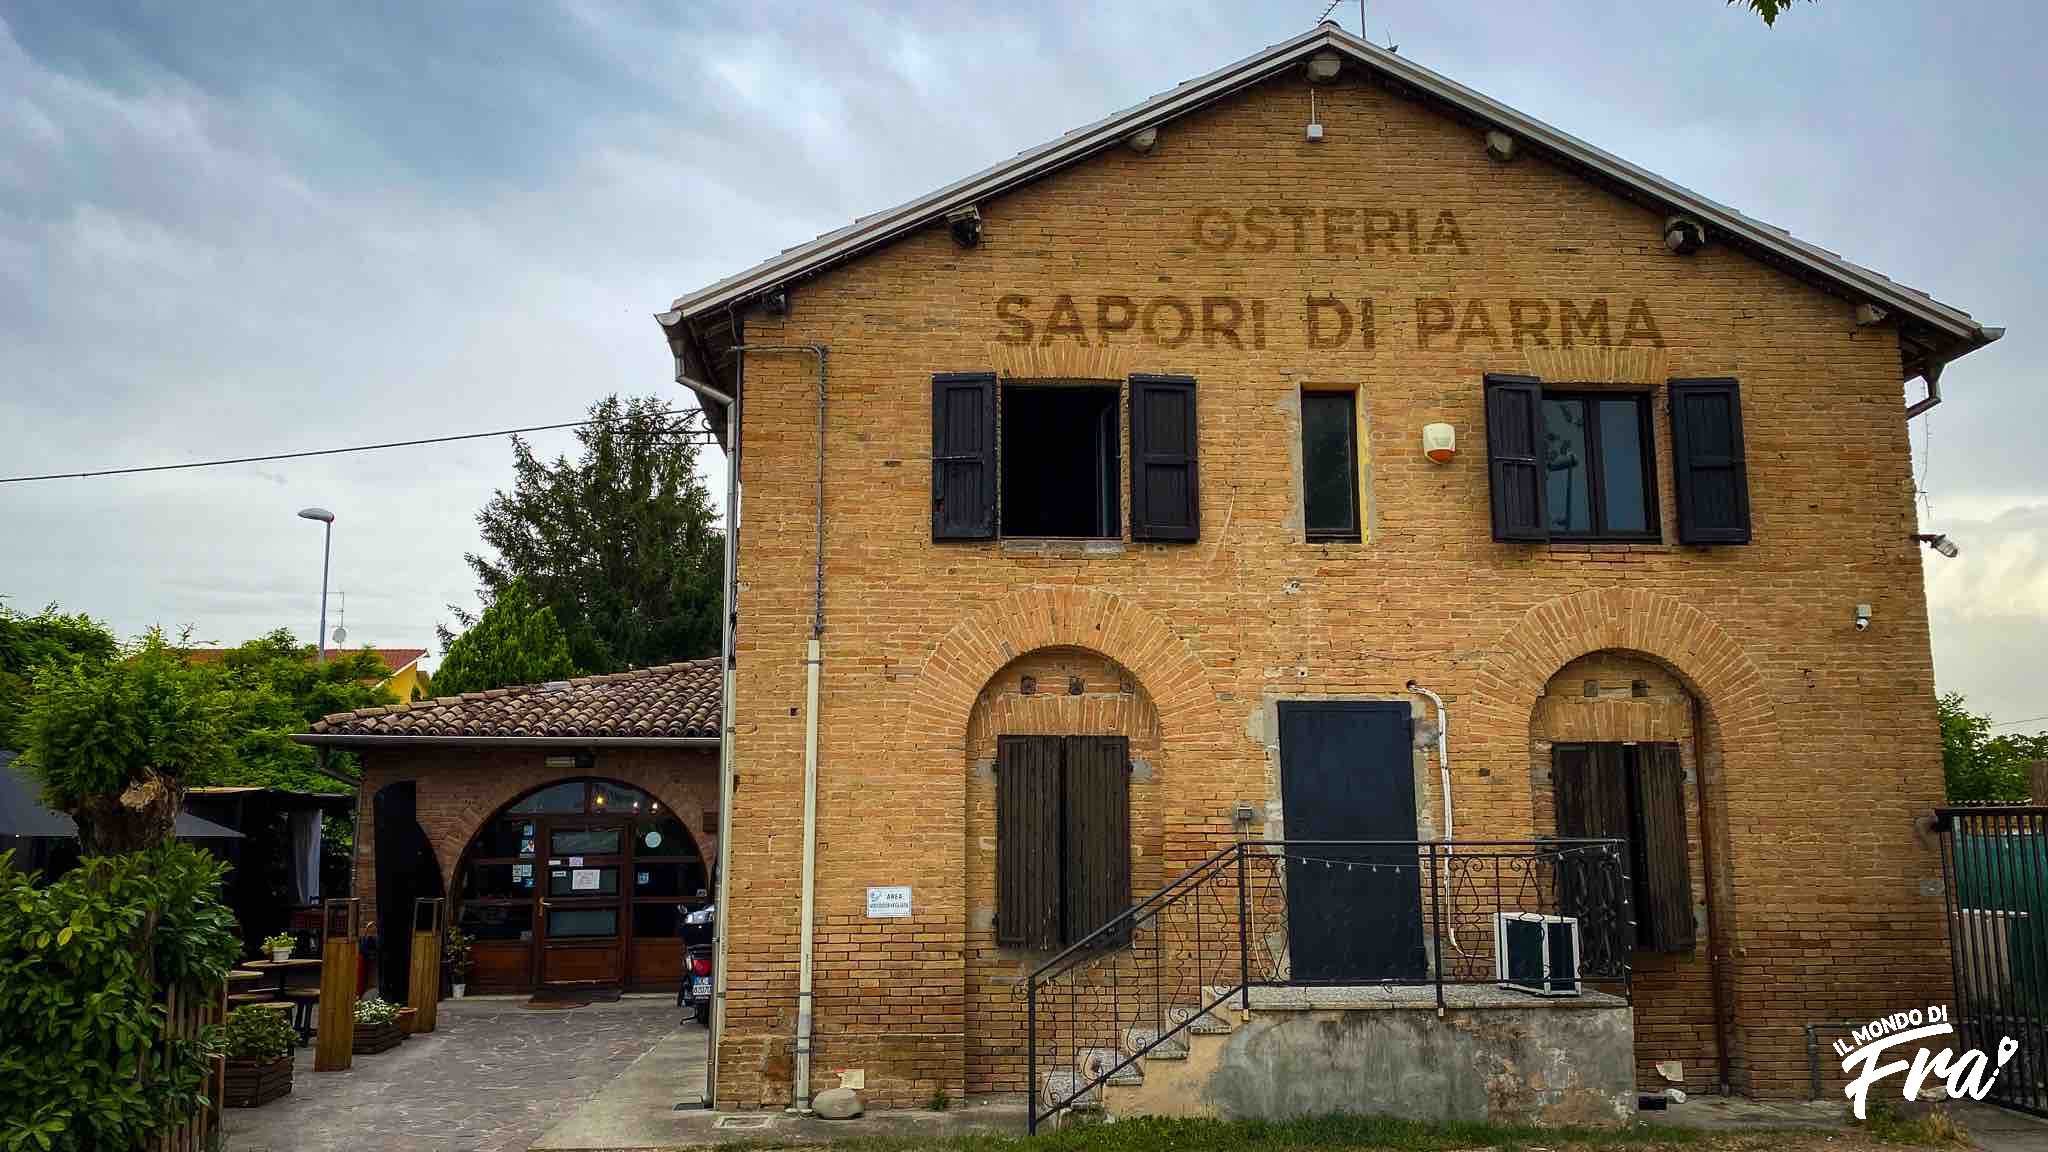 Osteria i vecchi sapori di Parma: ecco dove mangiare a 3 km dalla A15 Parma-La Spezia